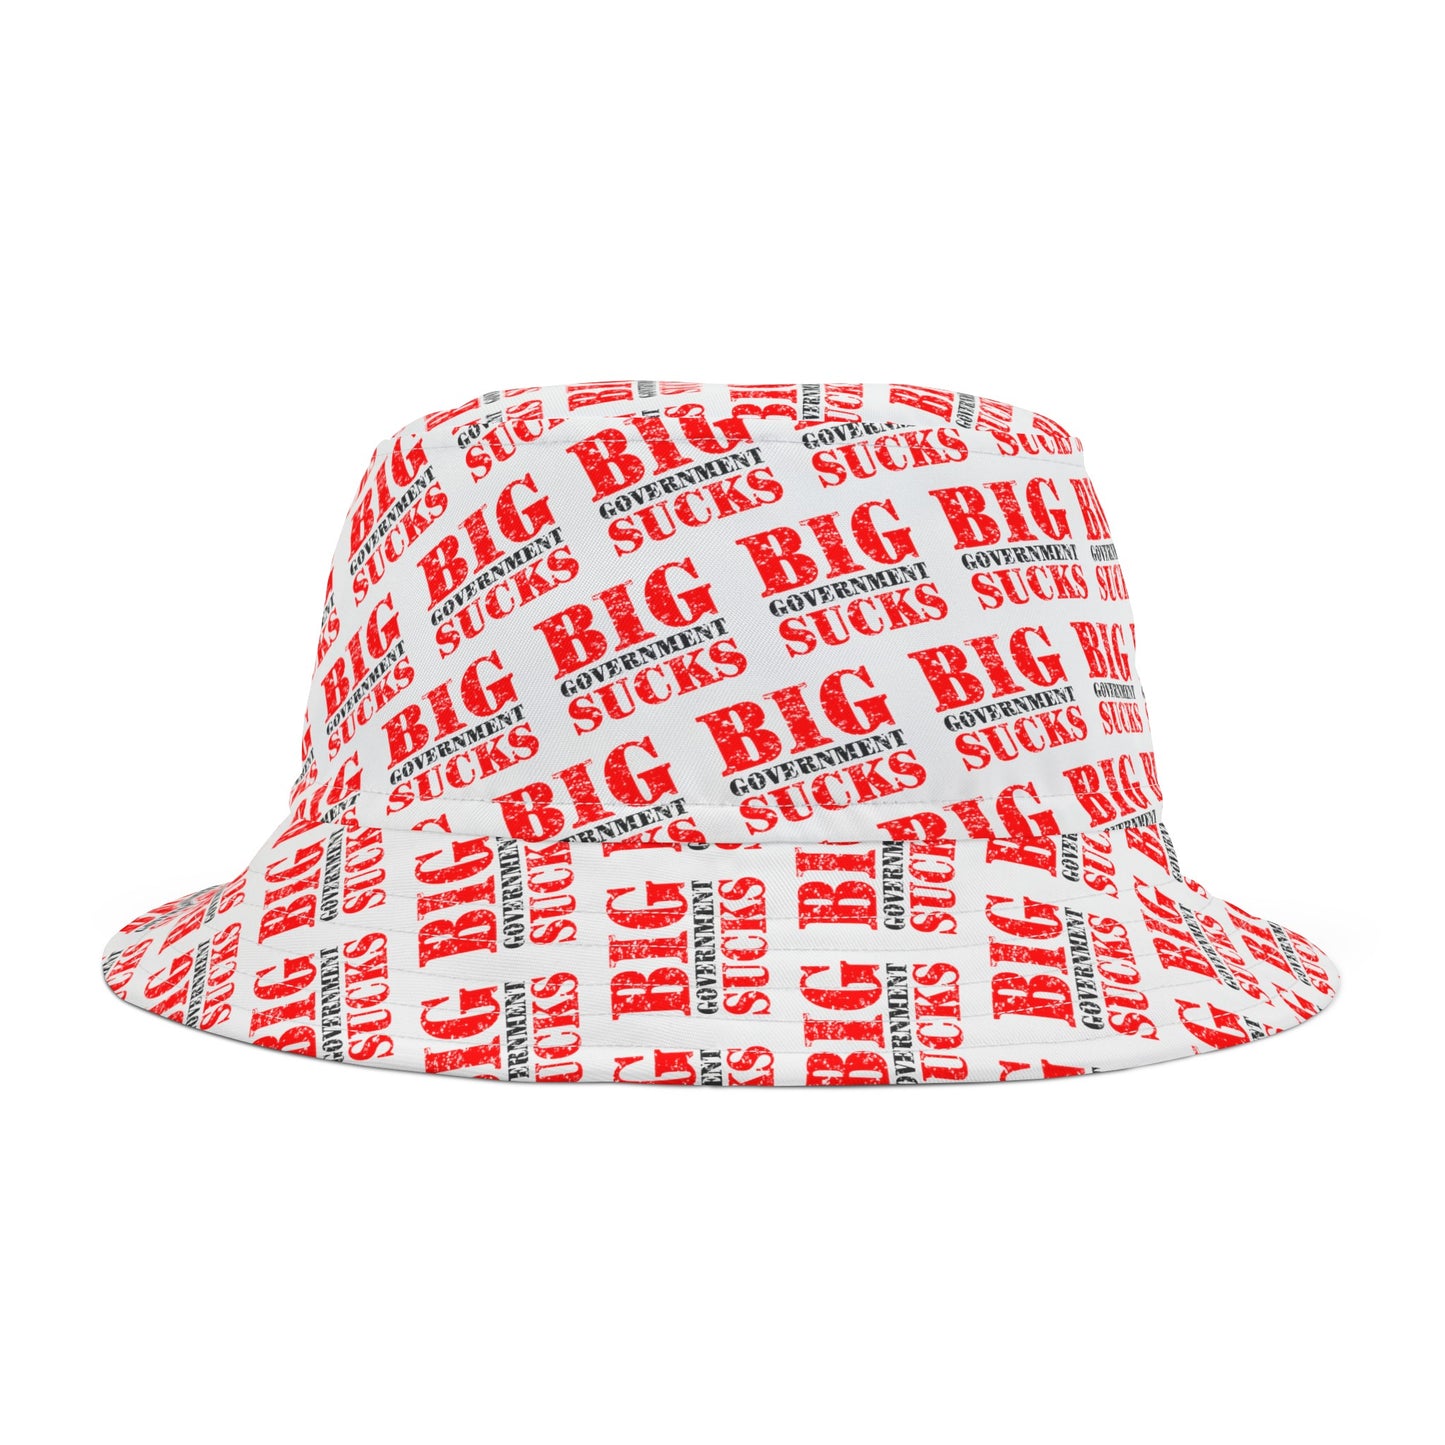 Big Goverment Sucks Hat